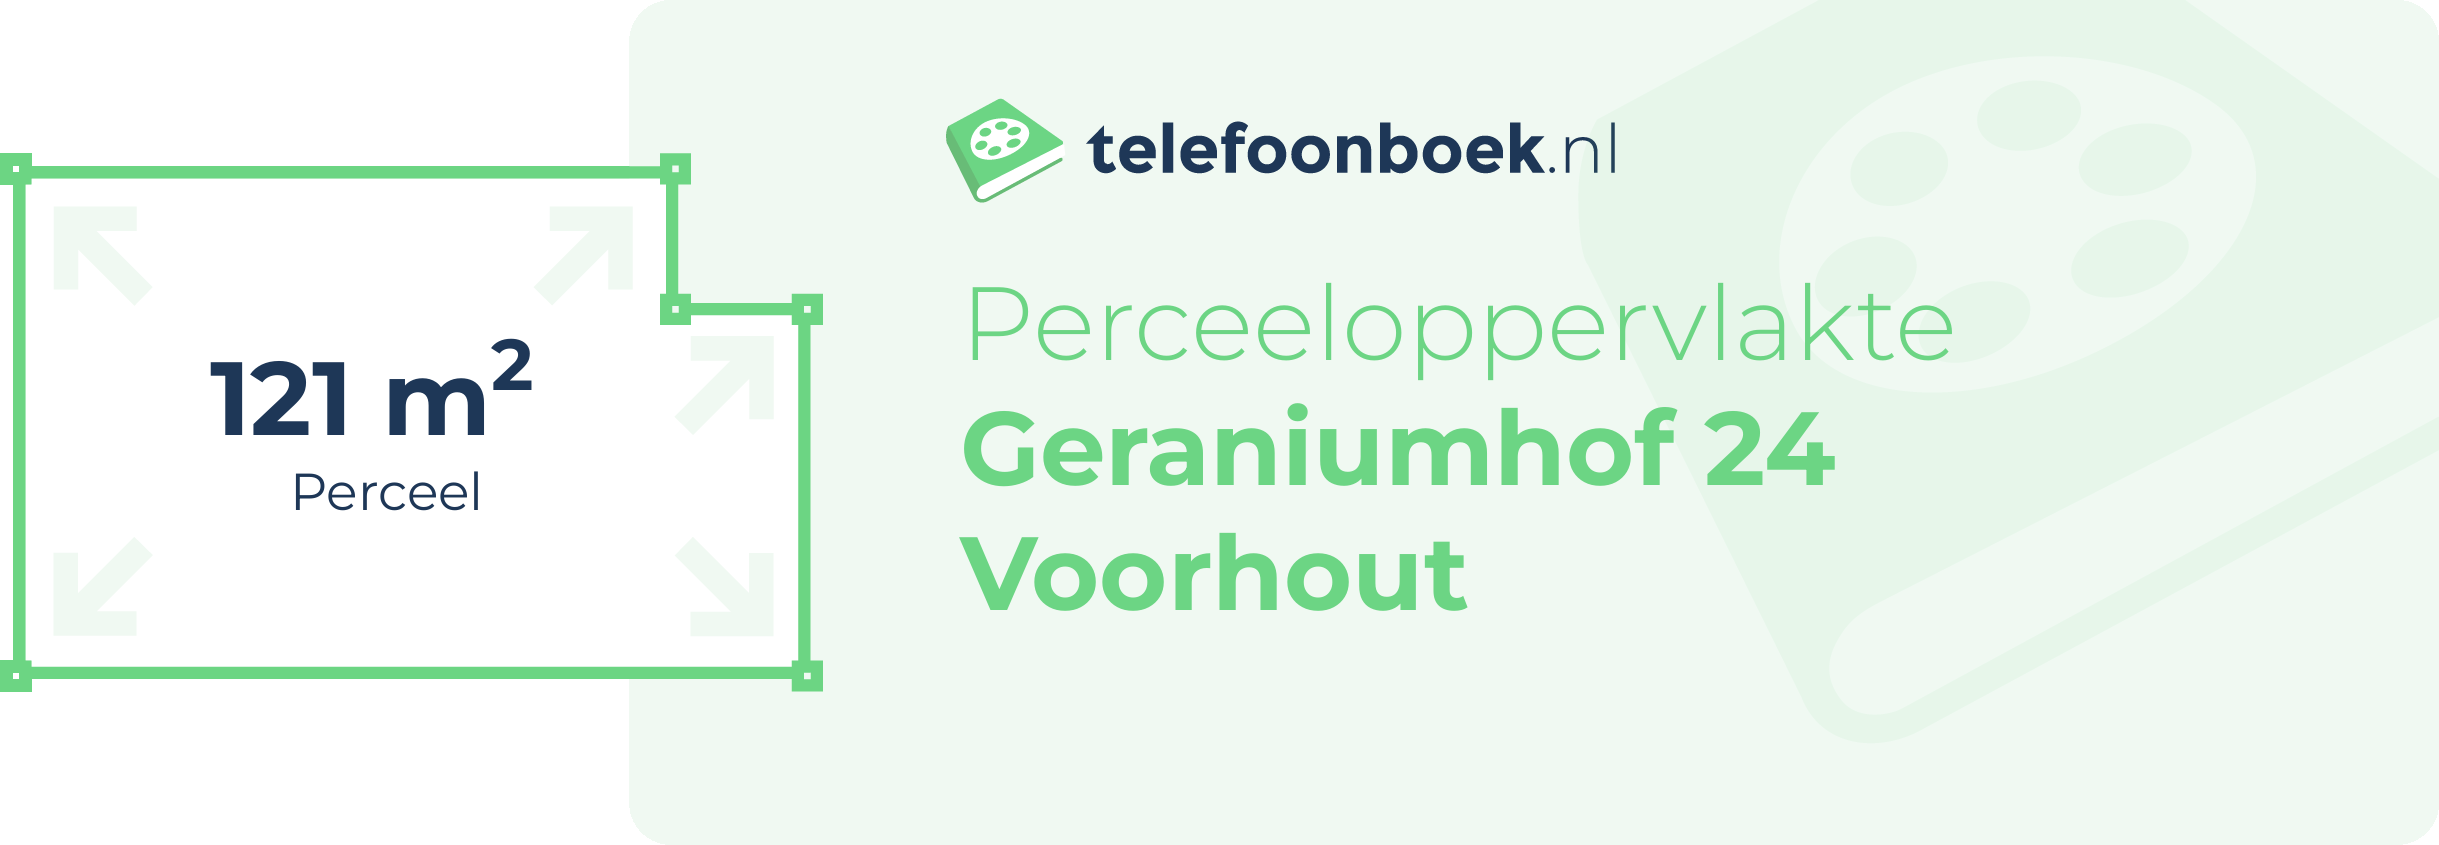 Perceeloppervlakte Geraniumhof 24 Voorhout